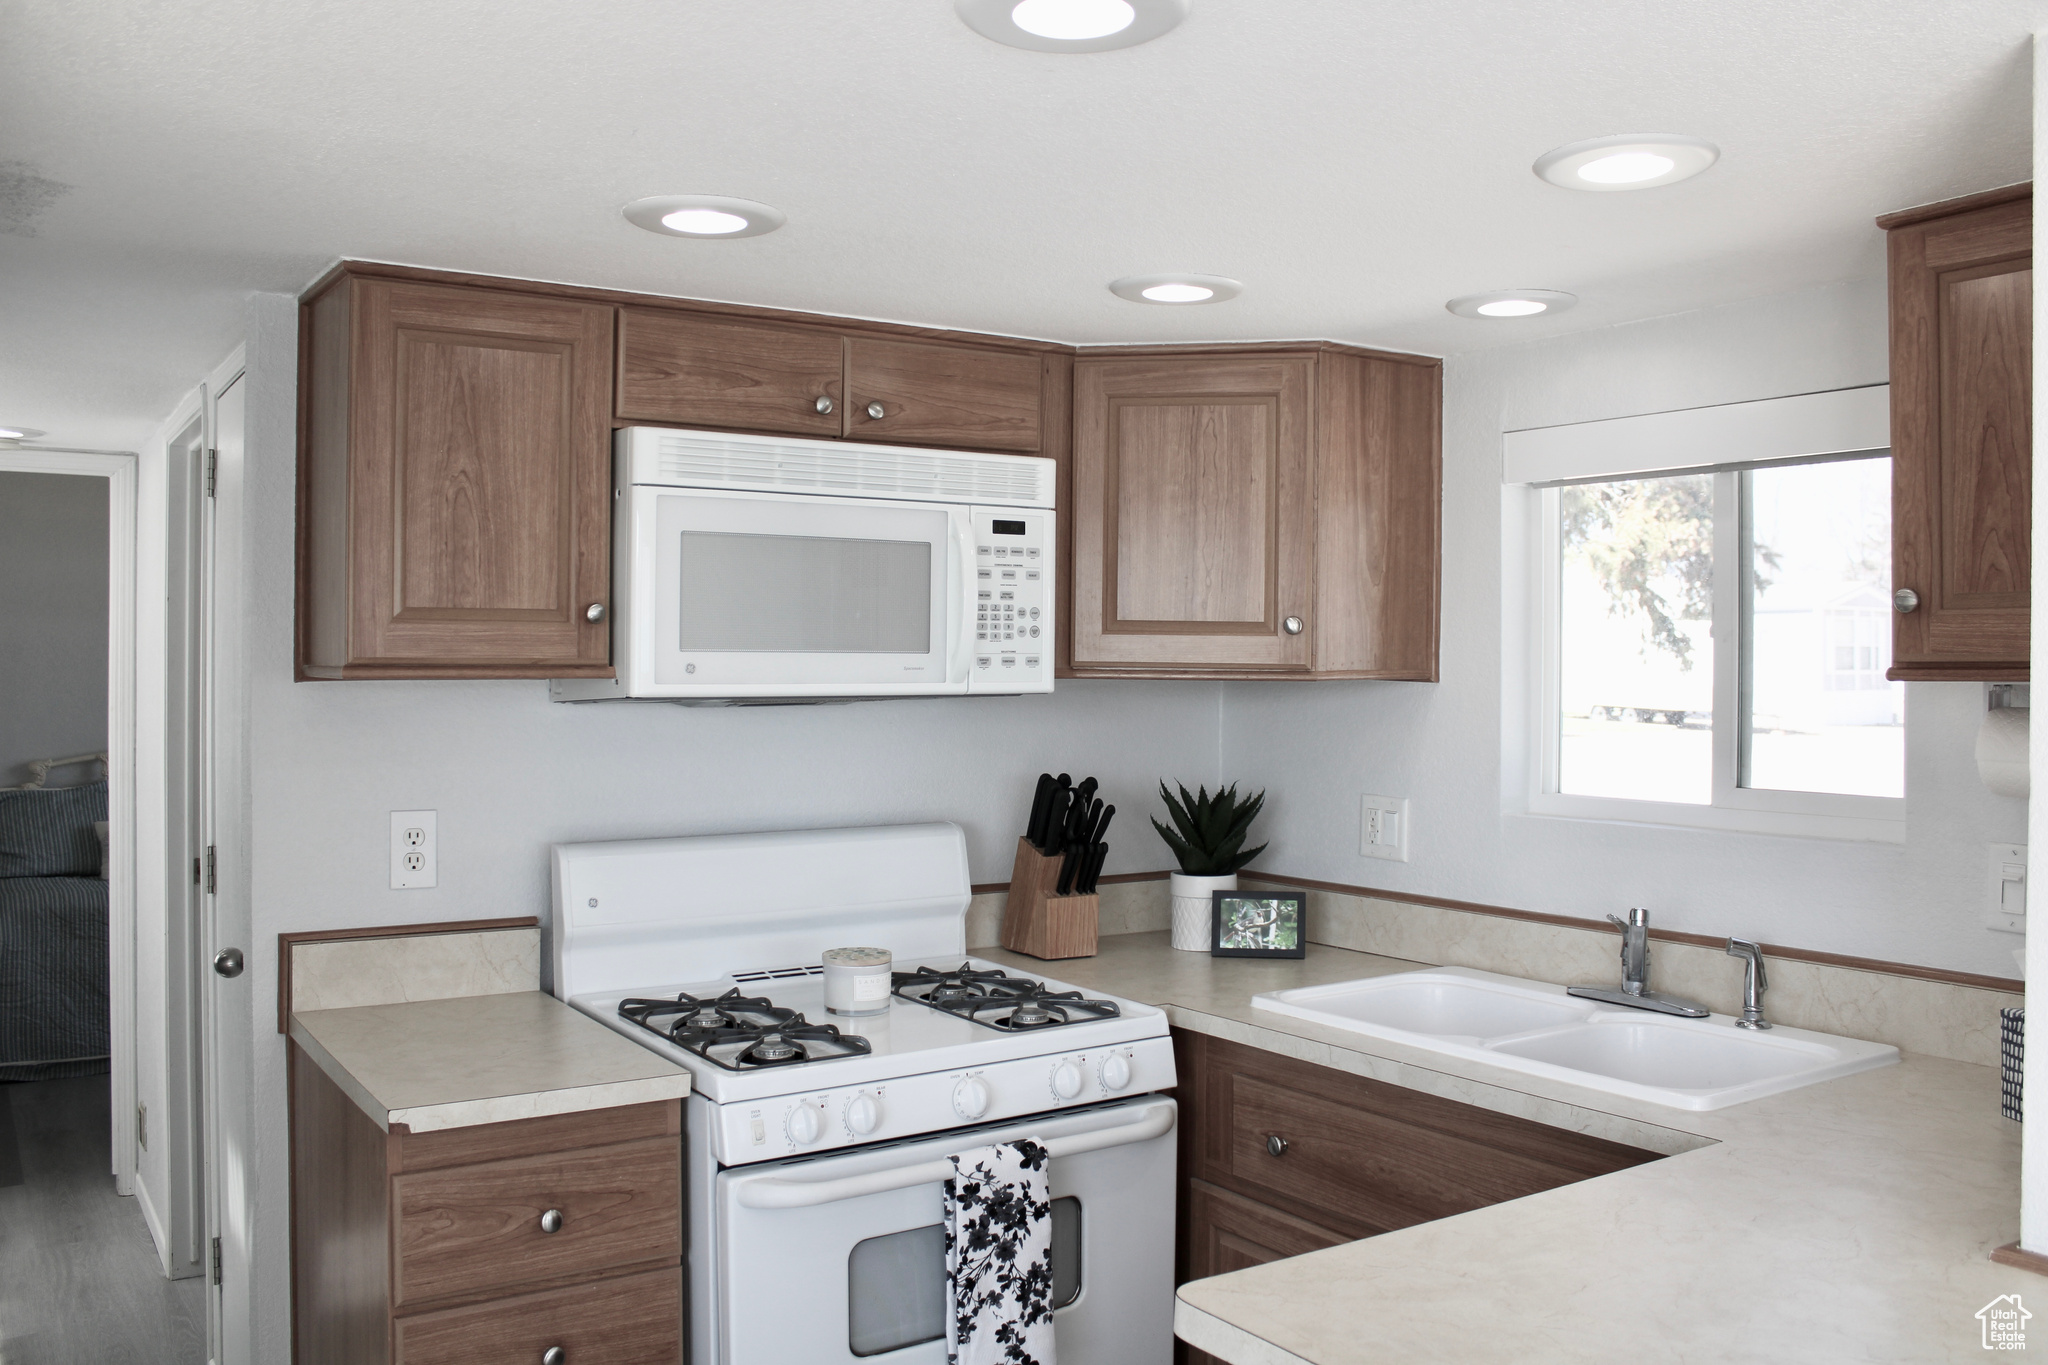 Kitchen with sink, white appliances, new LVP flooring.